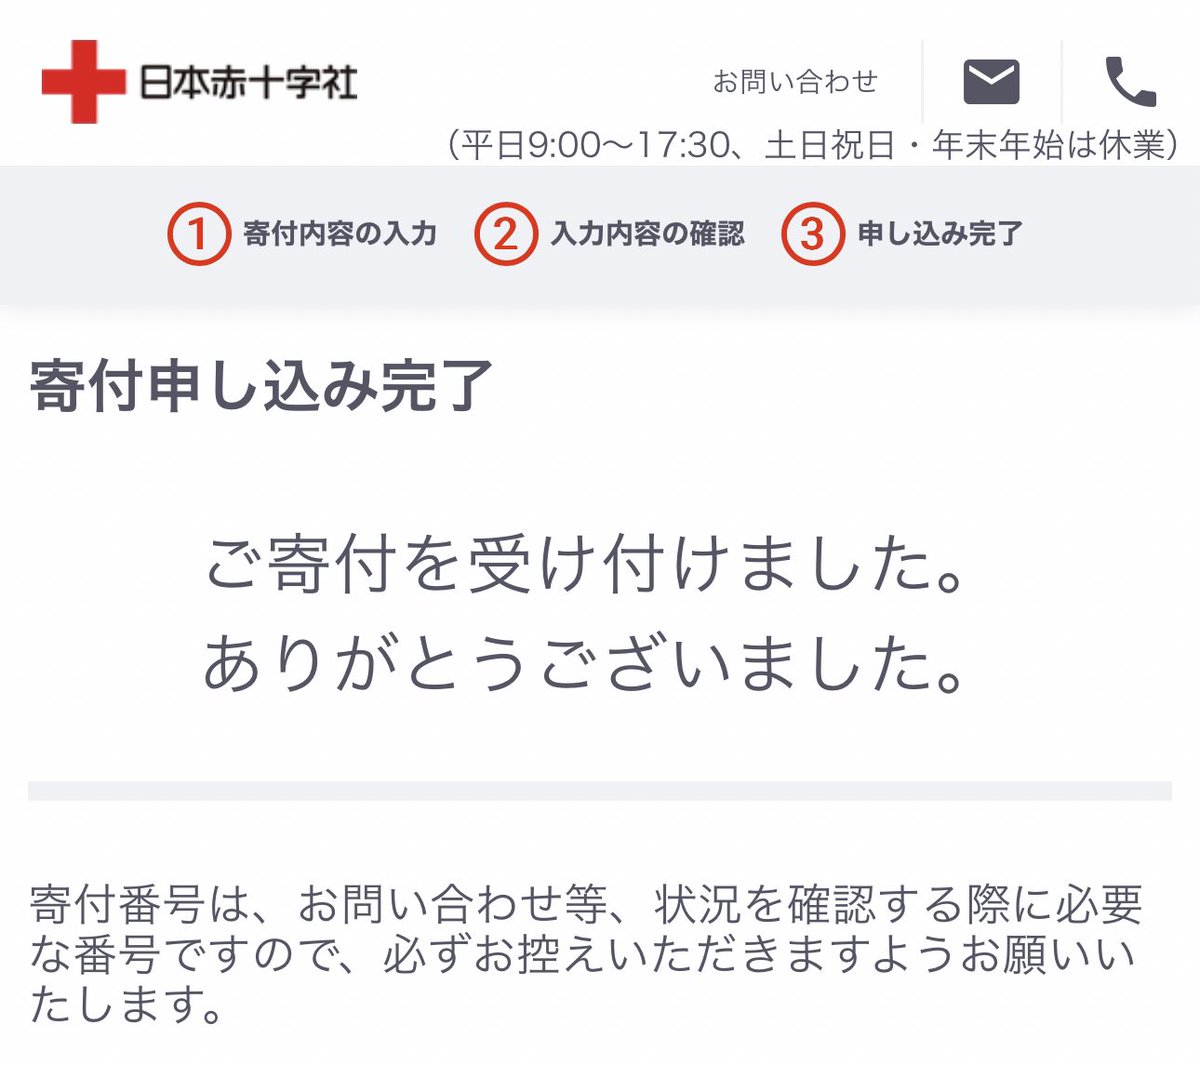 台湾への偽善はこれで終わり。
大して足しにならないだろうけど阪神が頑張った分だけ。

日本赤十字社の特設サイトは以下。